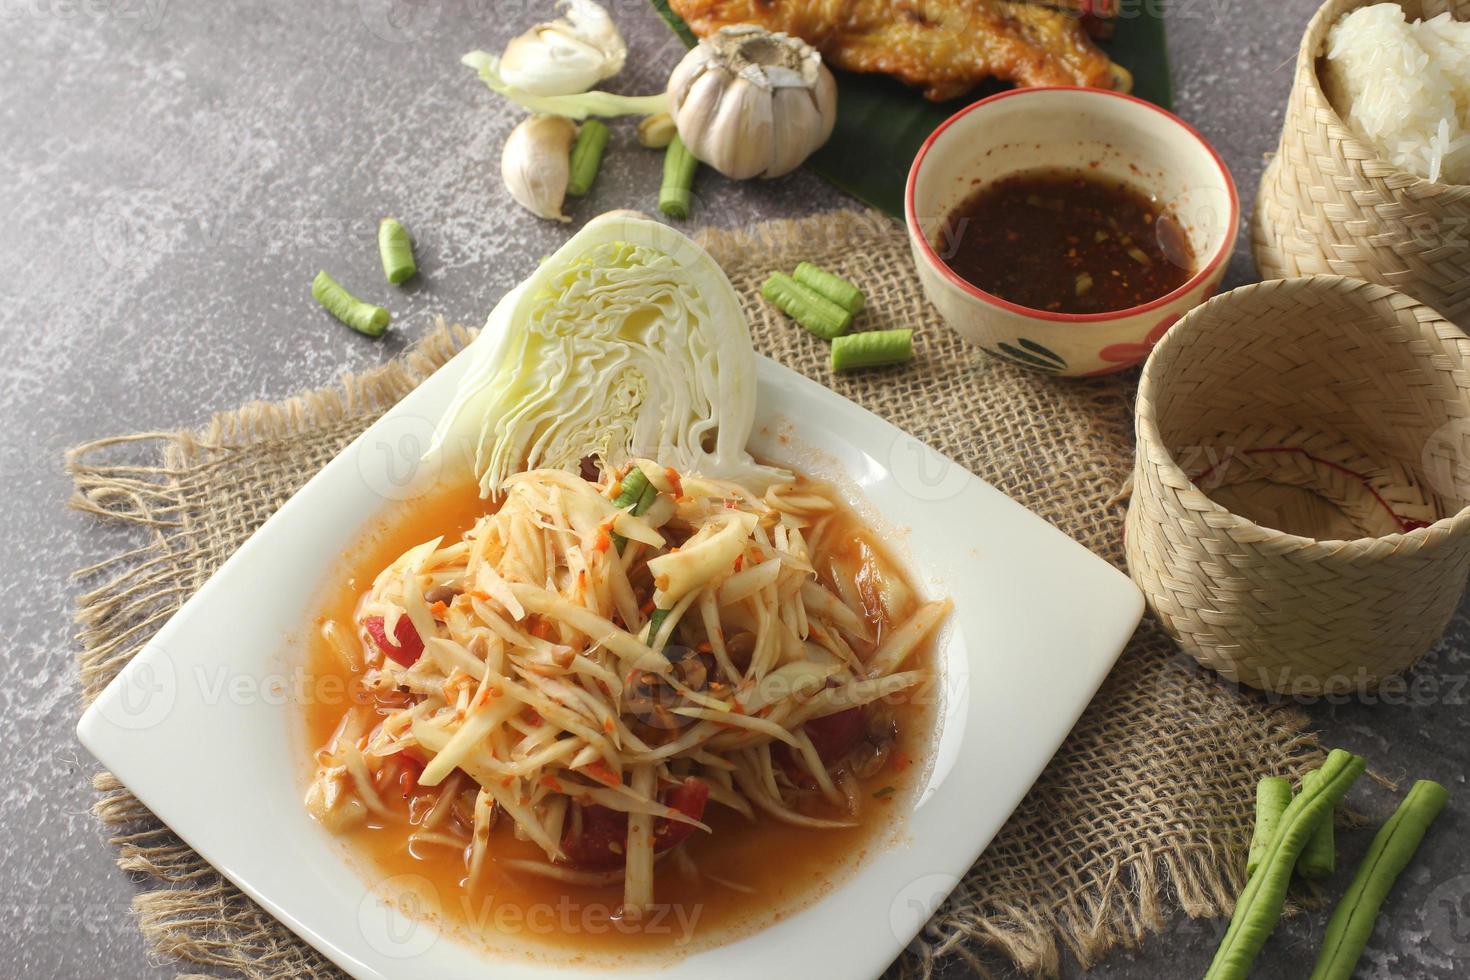 beliebtes thailändisches Essen und beliebtes Street Food Papayasalat oder das, was wir in Thailand Somtum nennen foto